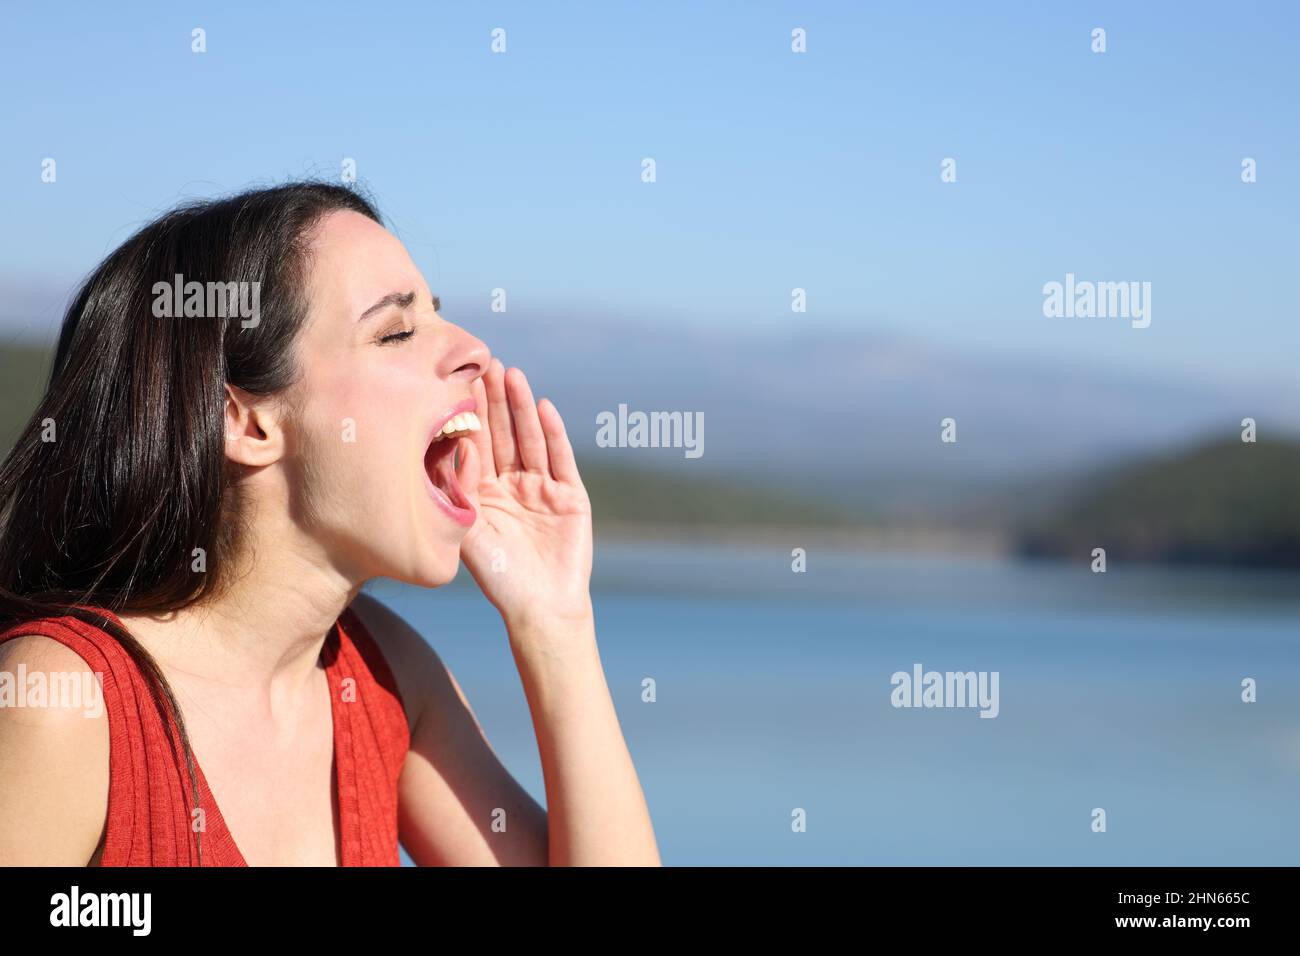 Vue latérale portrait d'une femme criant à haute voix dans un lac Banque D'Images